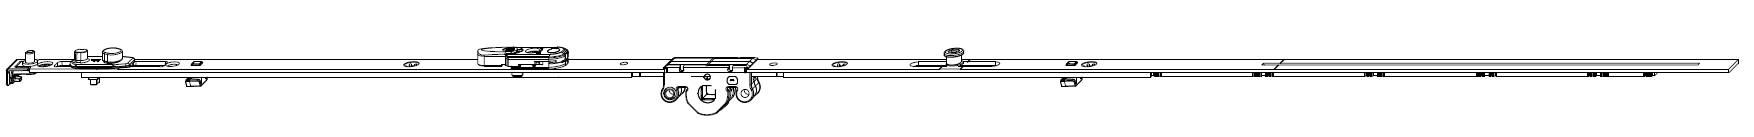 MAICO -  Cremonese MULTI-MATIC anta ribalta altezza maniglia fissa con piedino e dss per ribalta e bilanciere - gr / dim. 430 - entrata 15 - alt. man. 125 - lbb/hbb 360 - 430